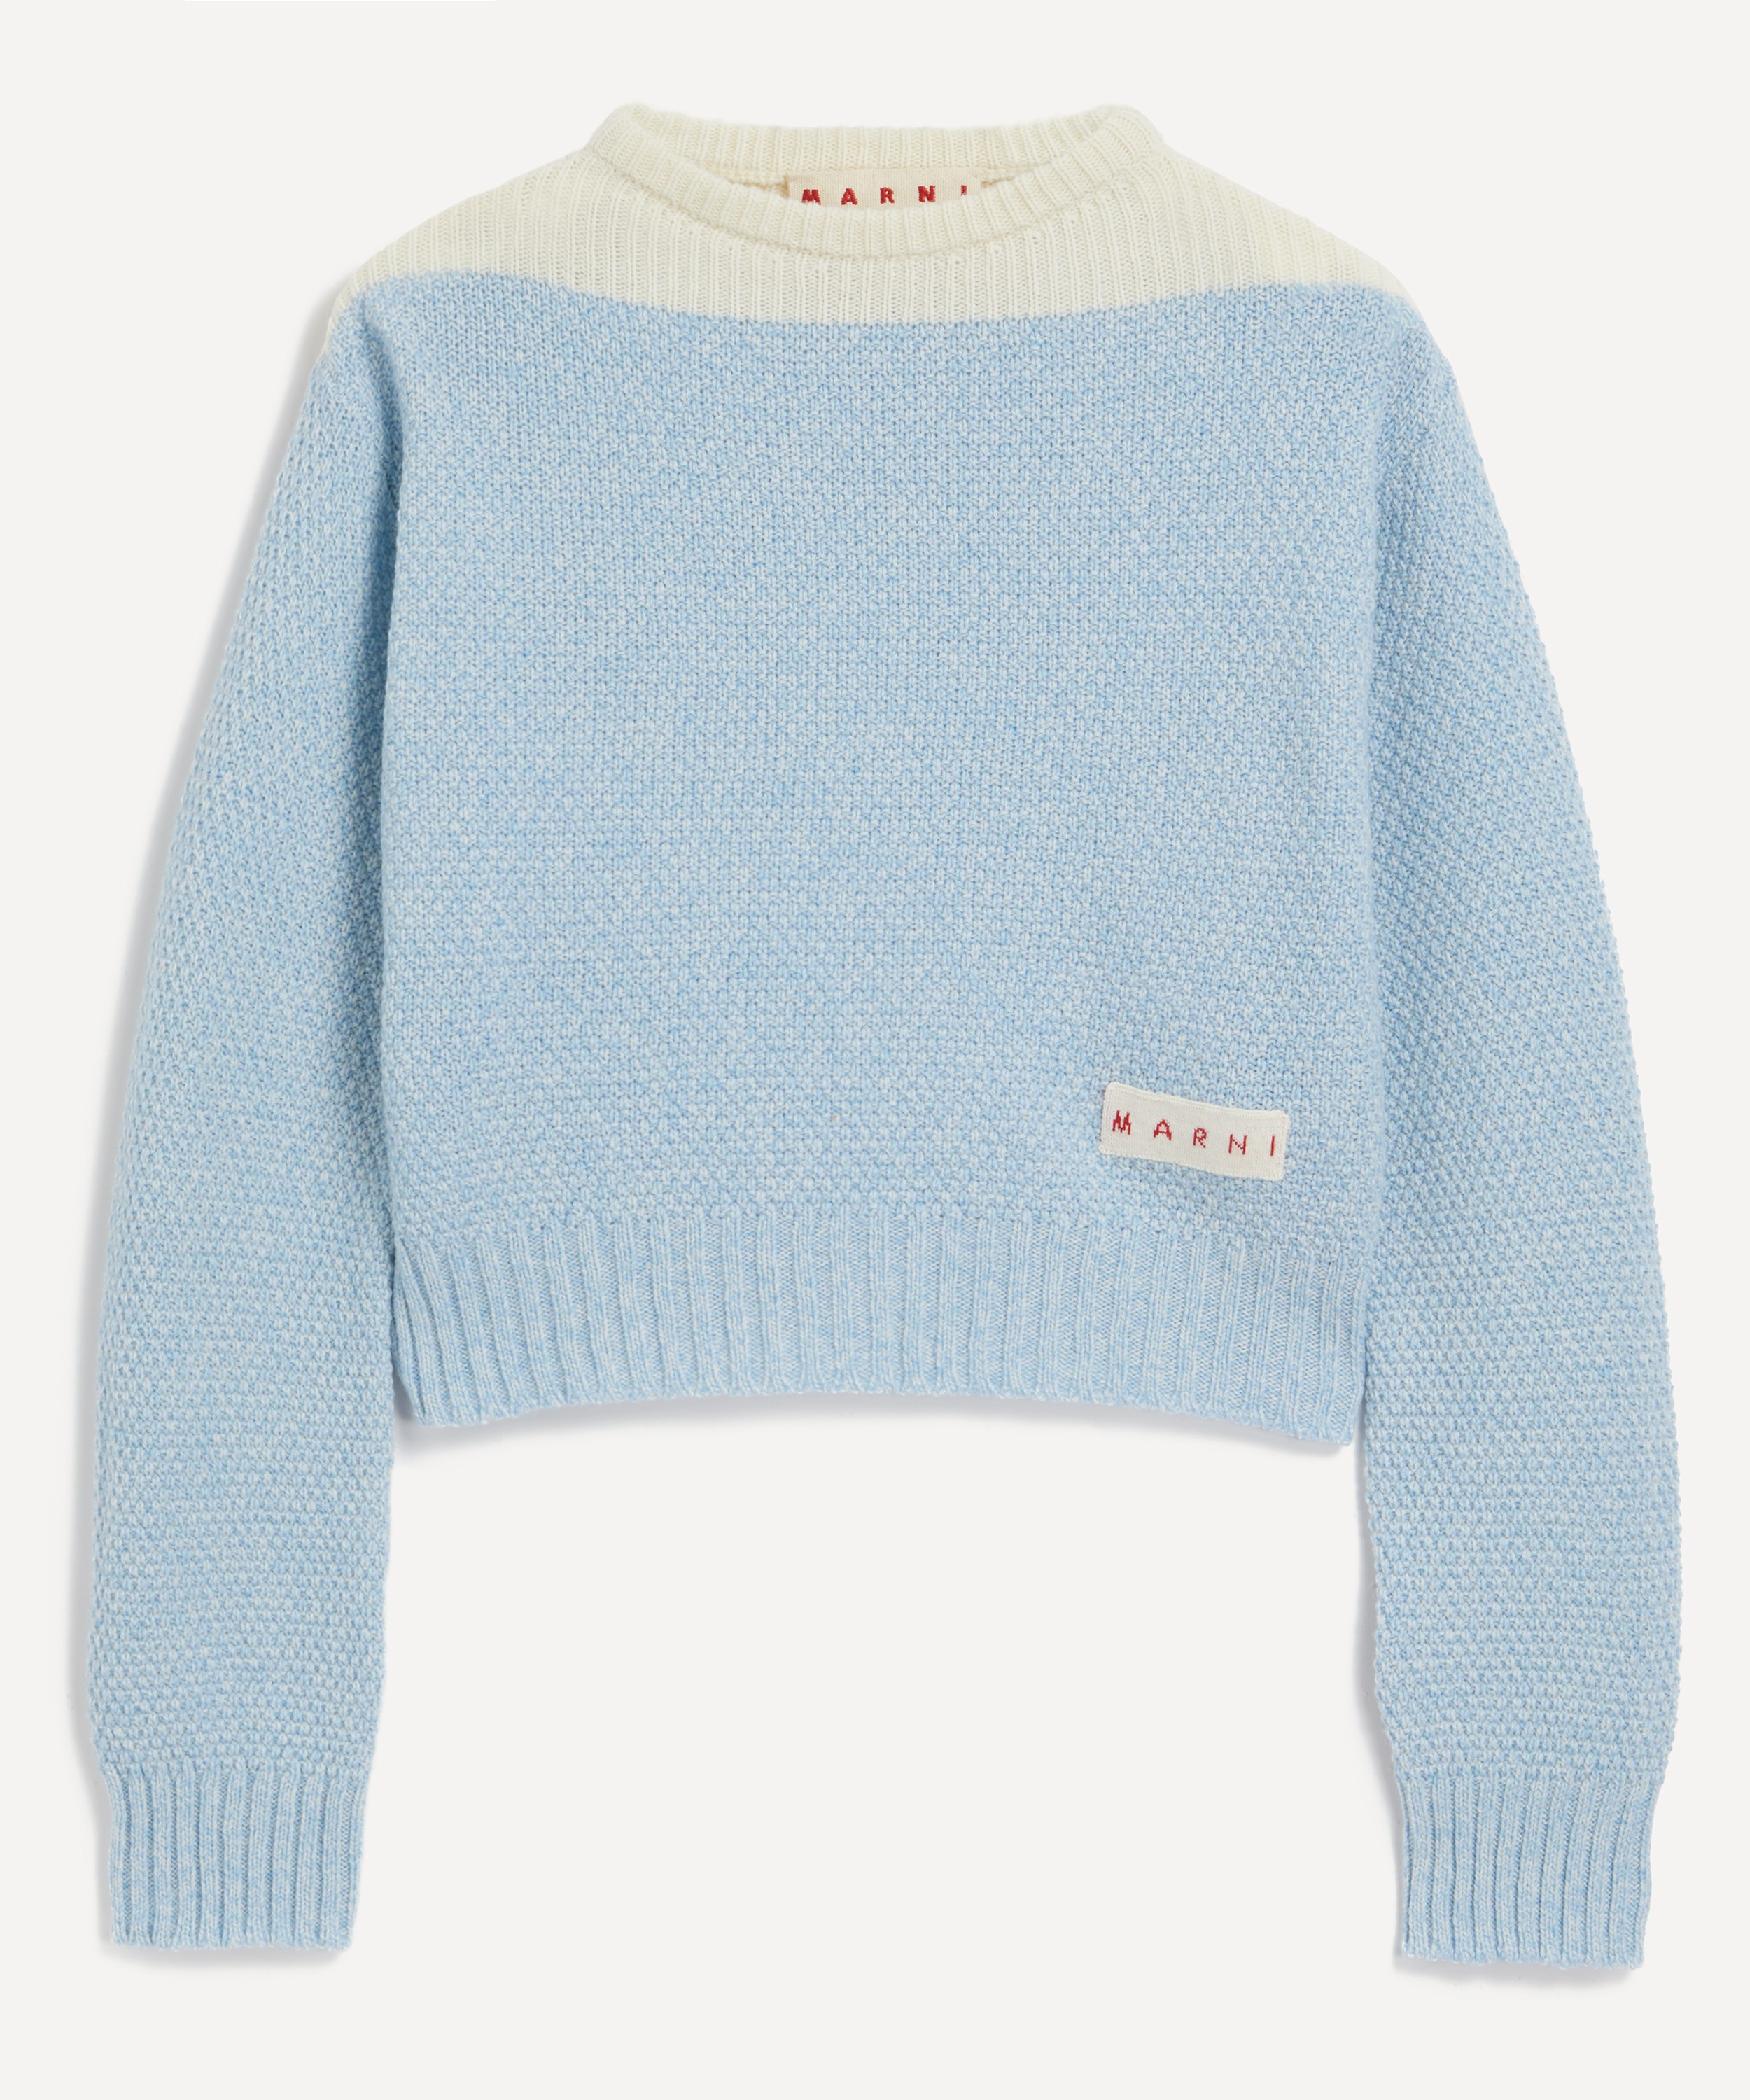 Marni Round Neck Wool Sweater   Liberty